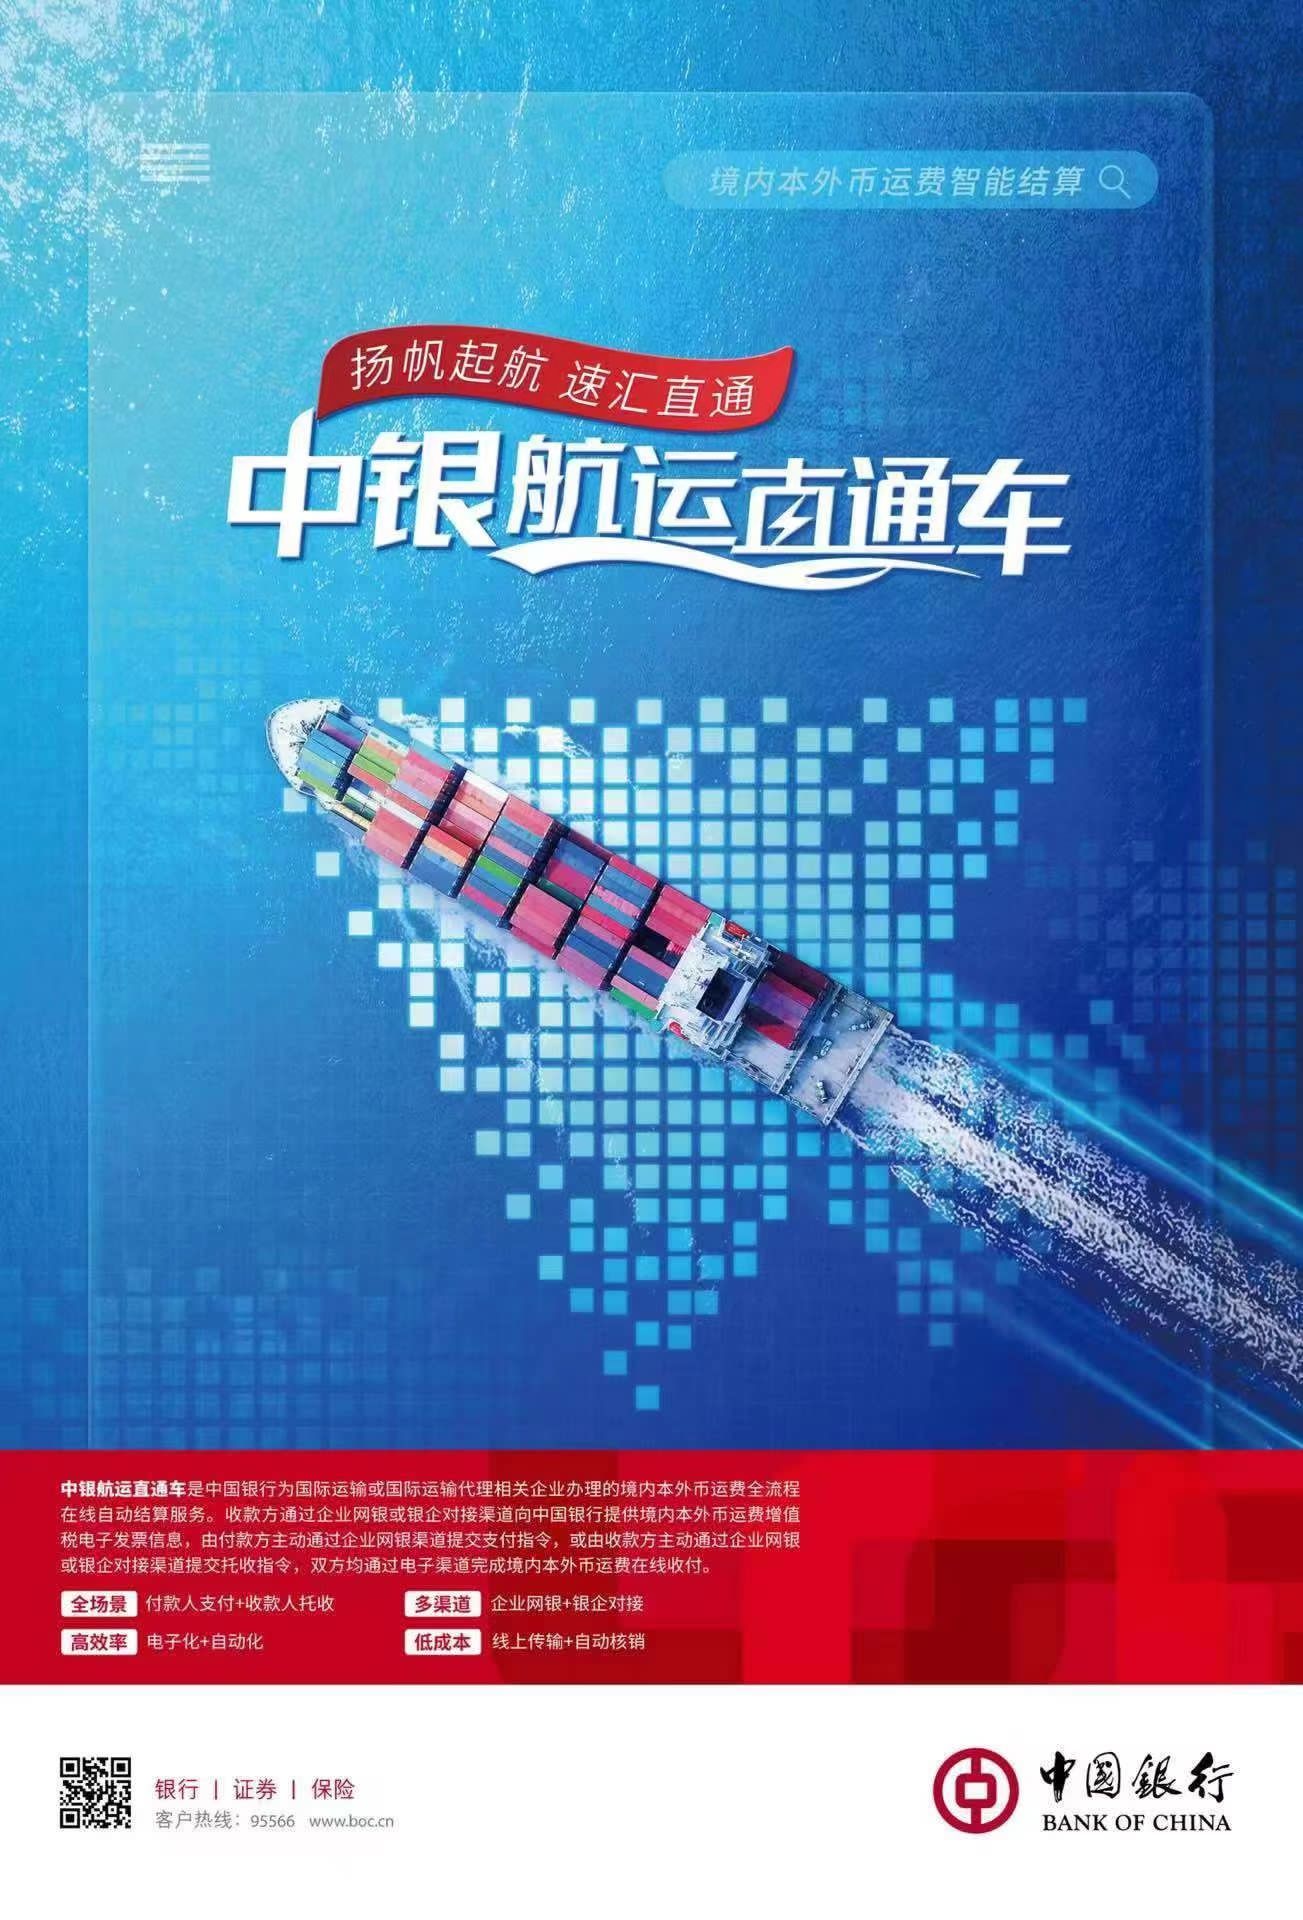 中國銀行江蘇省分行成功落地全國首筆全流程數字化“中銀航運直通車”業務